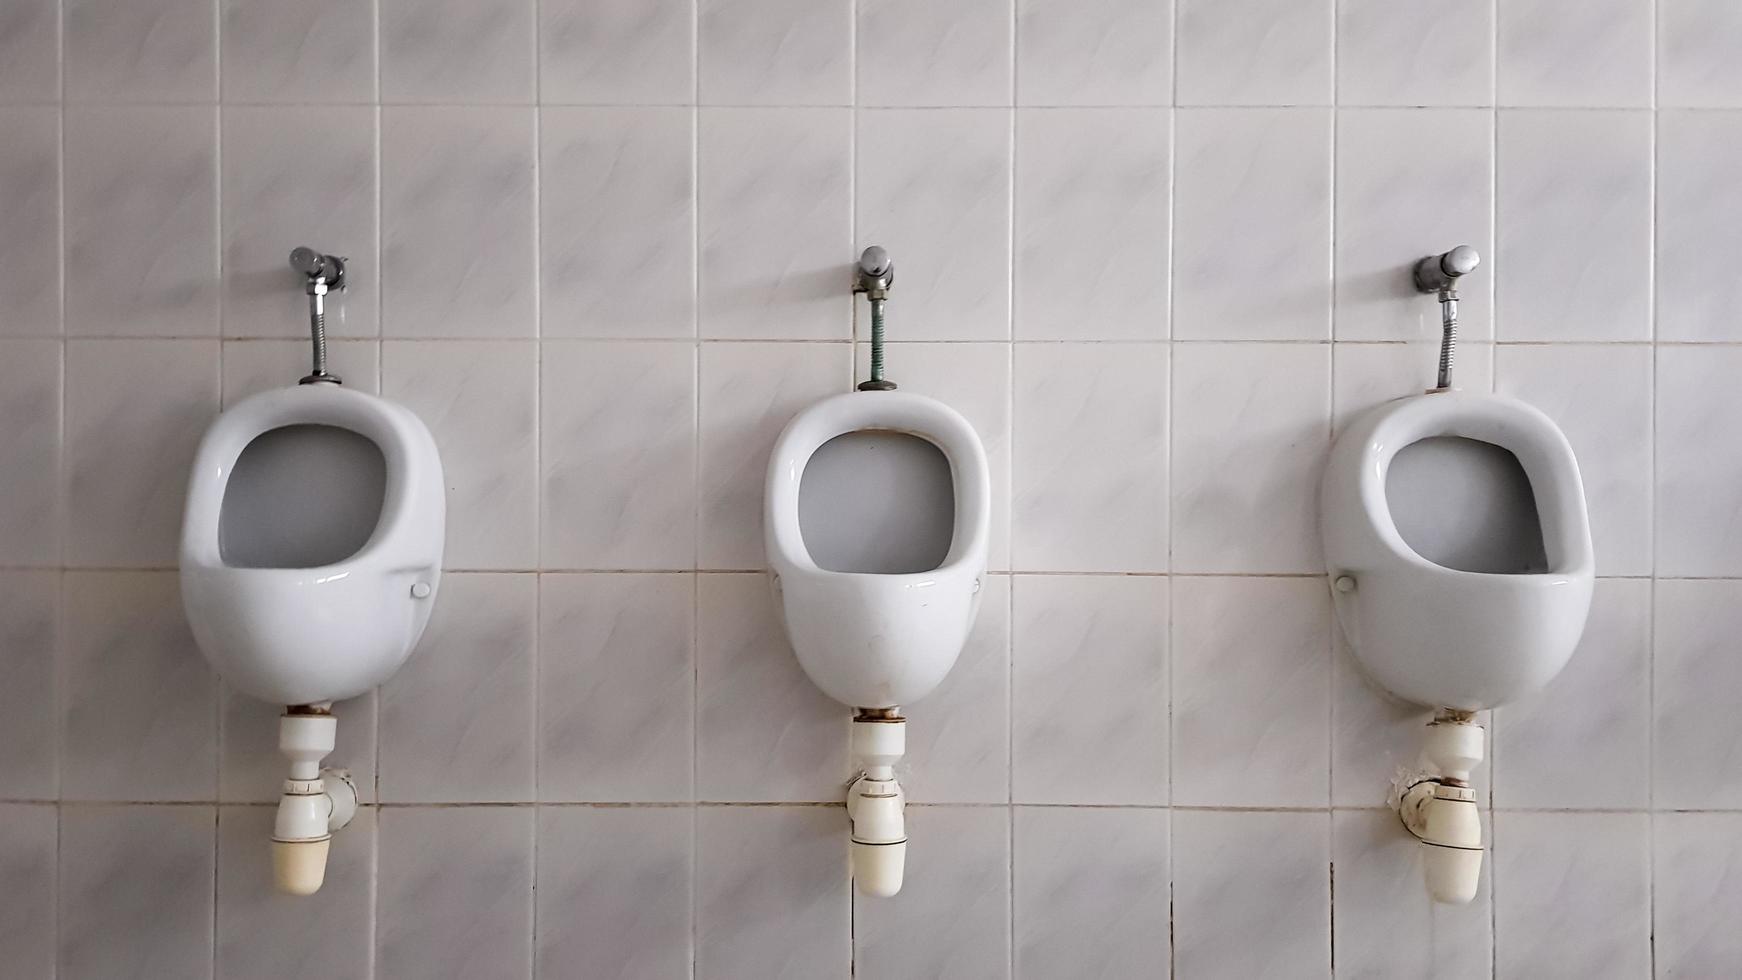 offentliga toaletter med massor av keramiska urinaler. stor offentlig toalett, vägghängda skålar på toaletten. urinaler förbereder skålar för män. foto